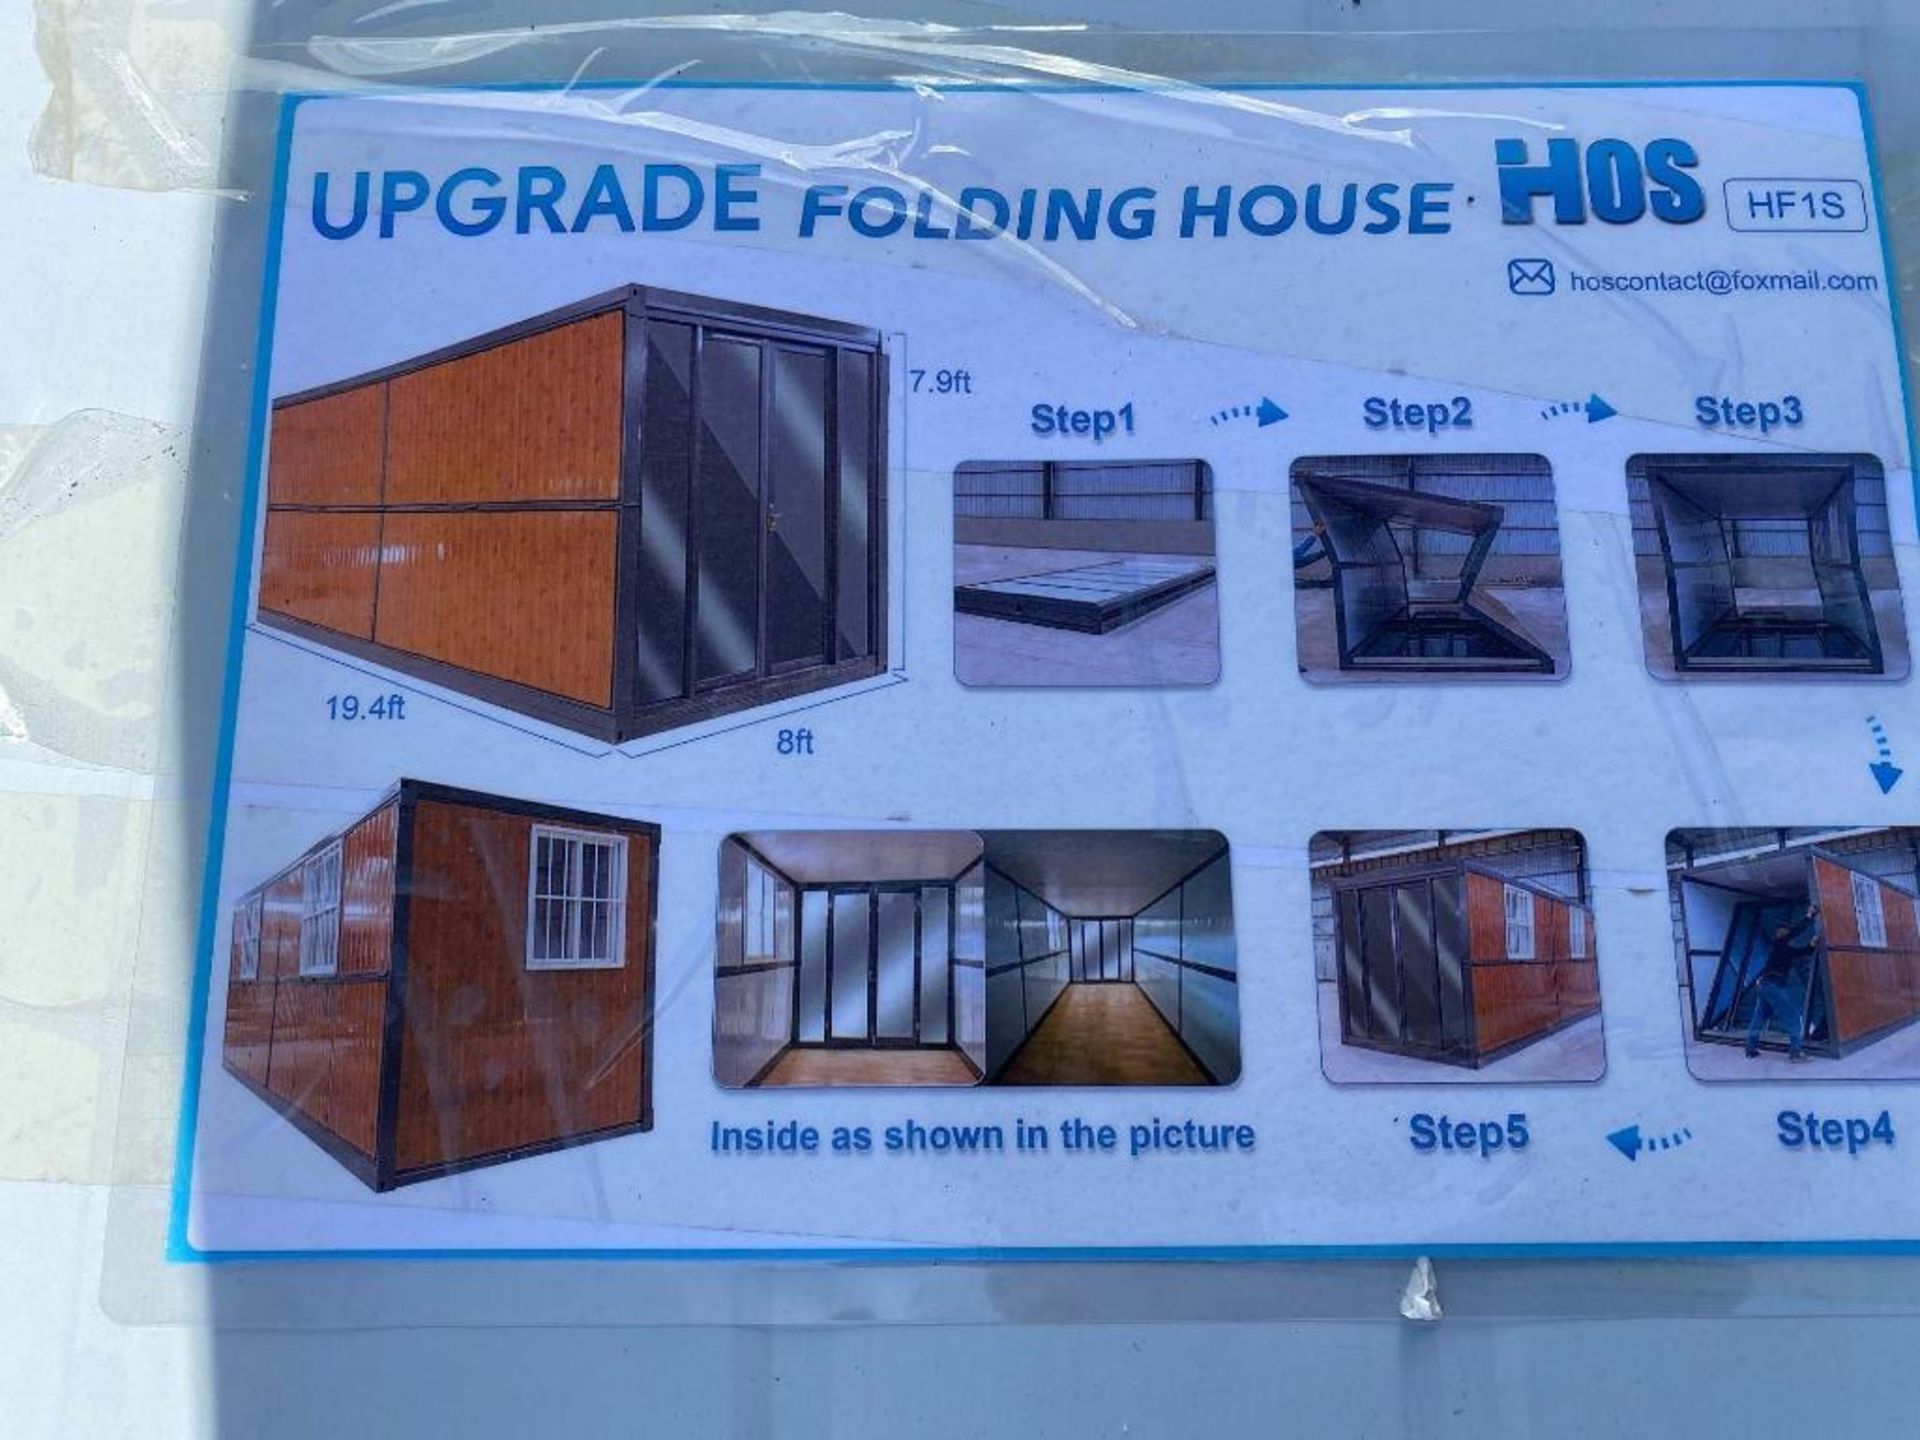 New HOS HF-15 Foldable House Unit - Image 2 of 4